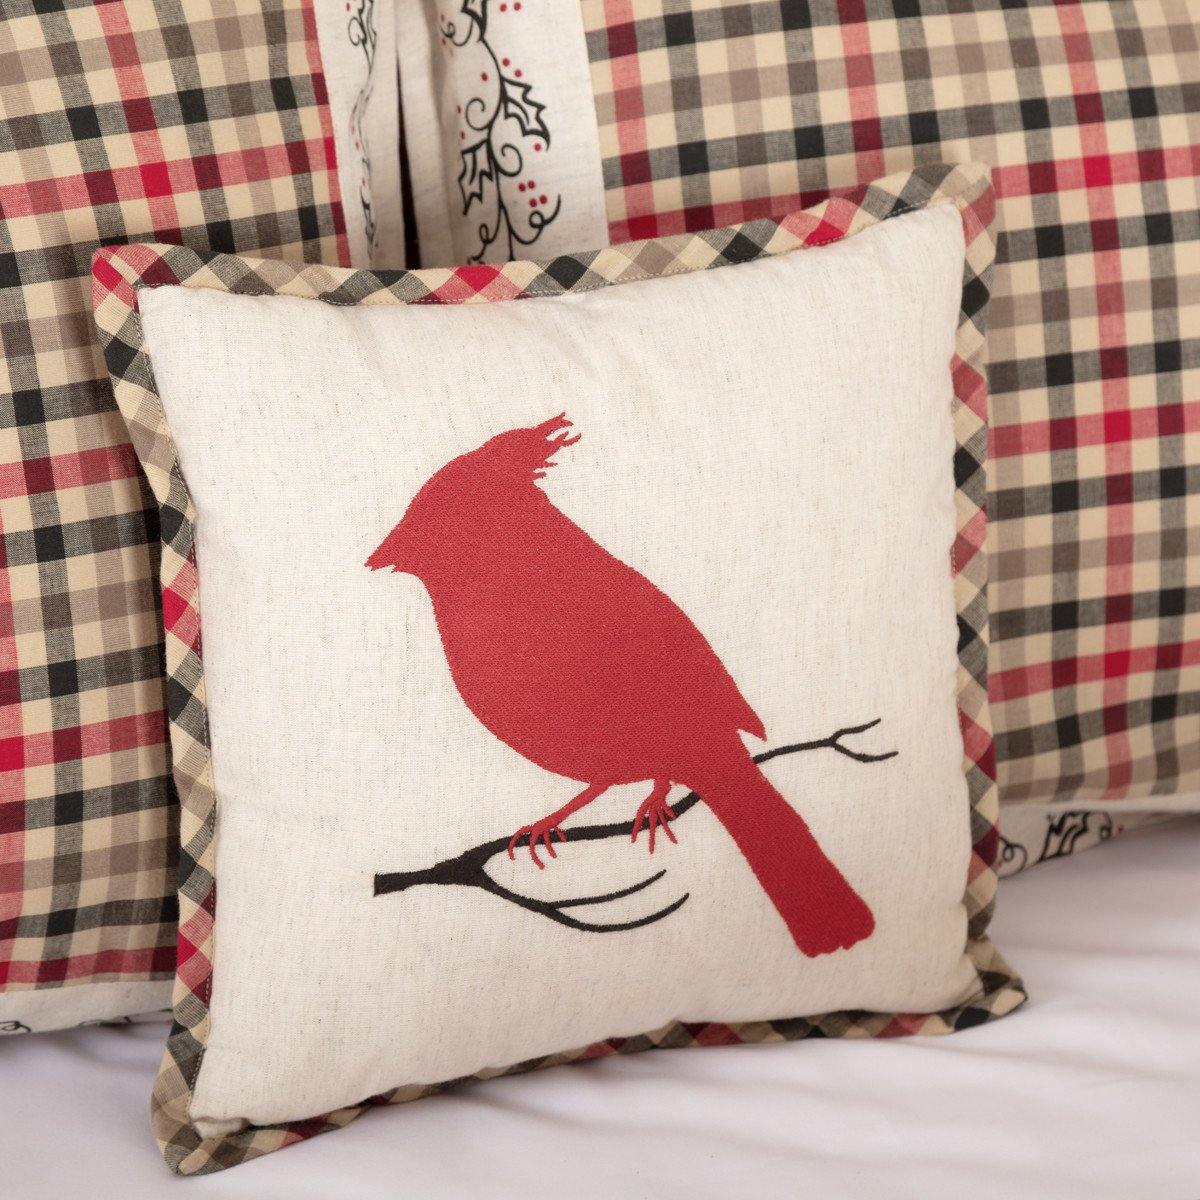 Hollis Cardinal Pillow 12"x12" - The Fox Decor